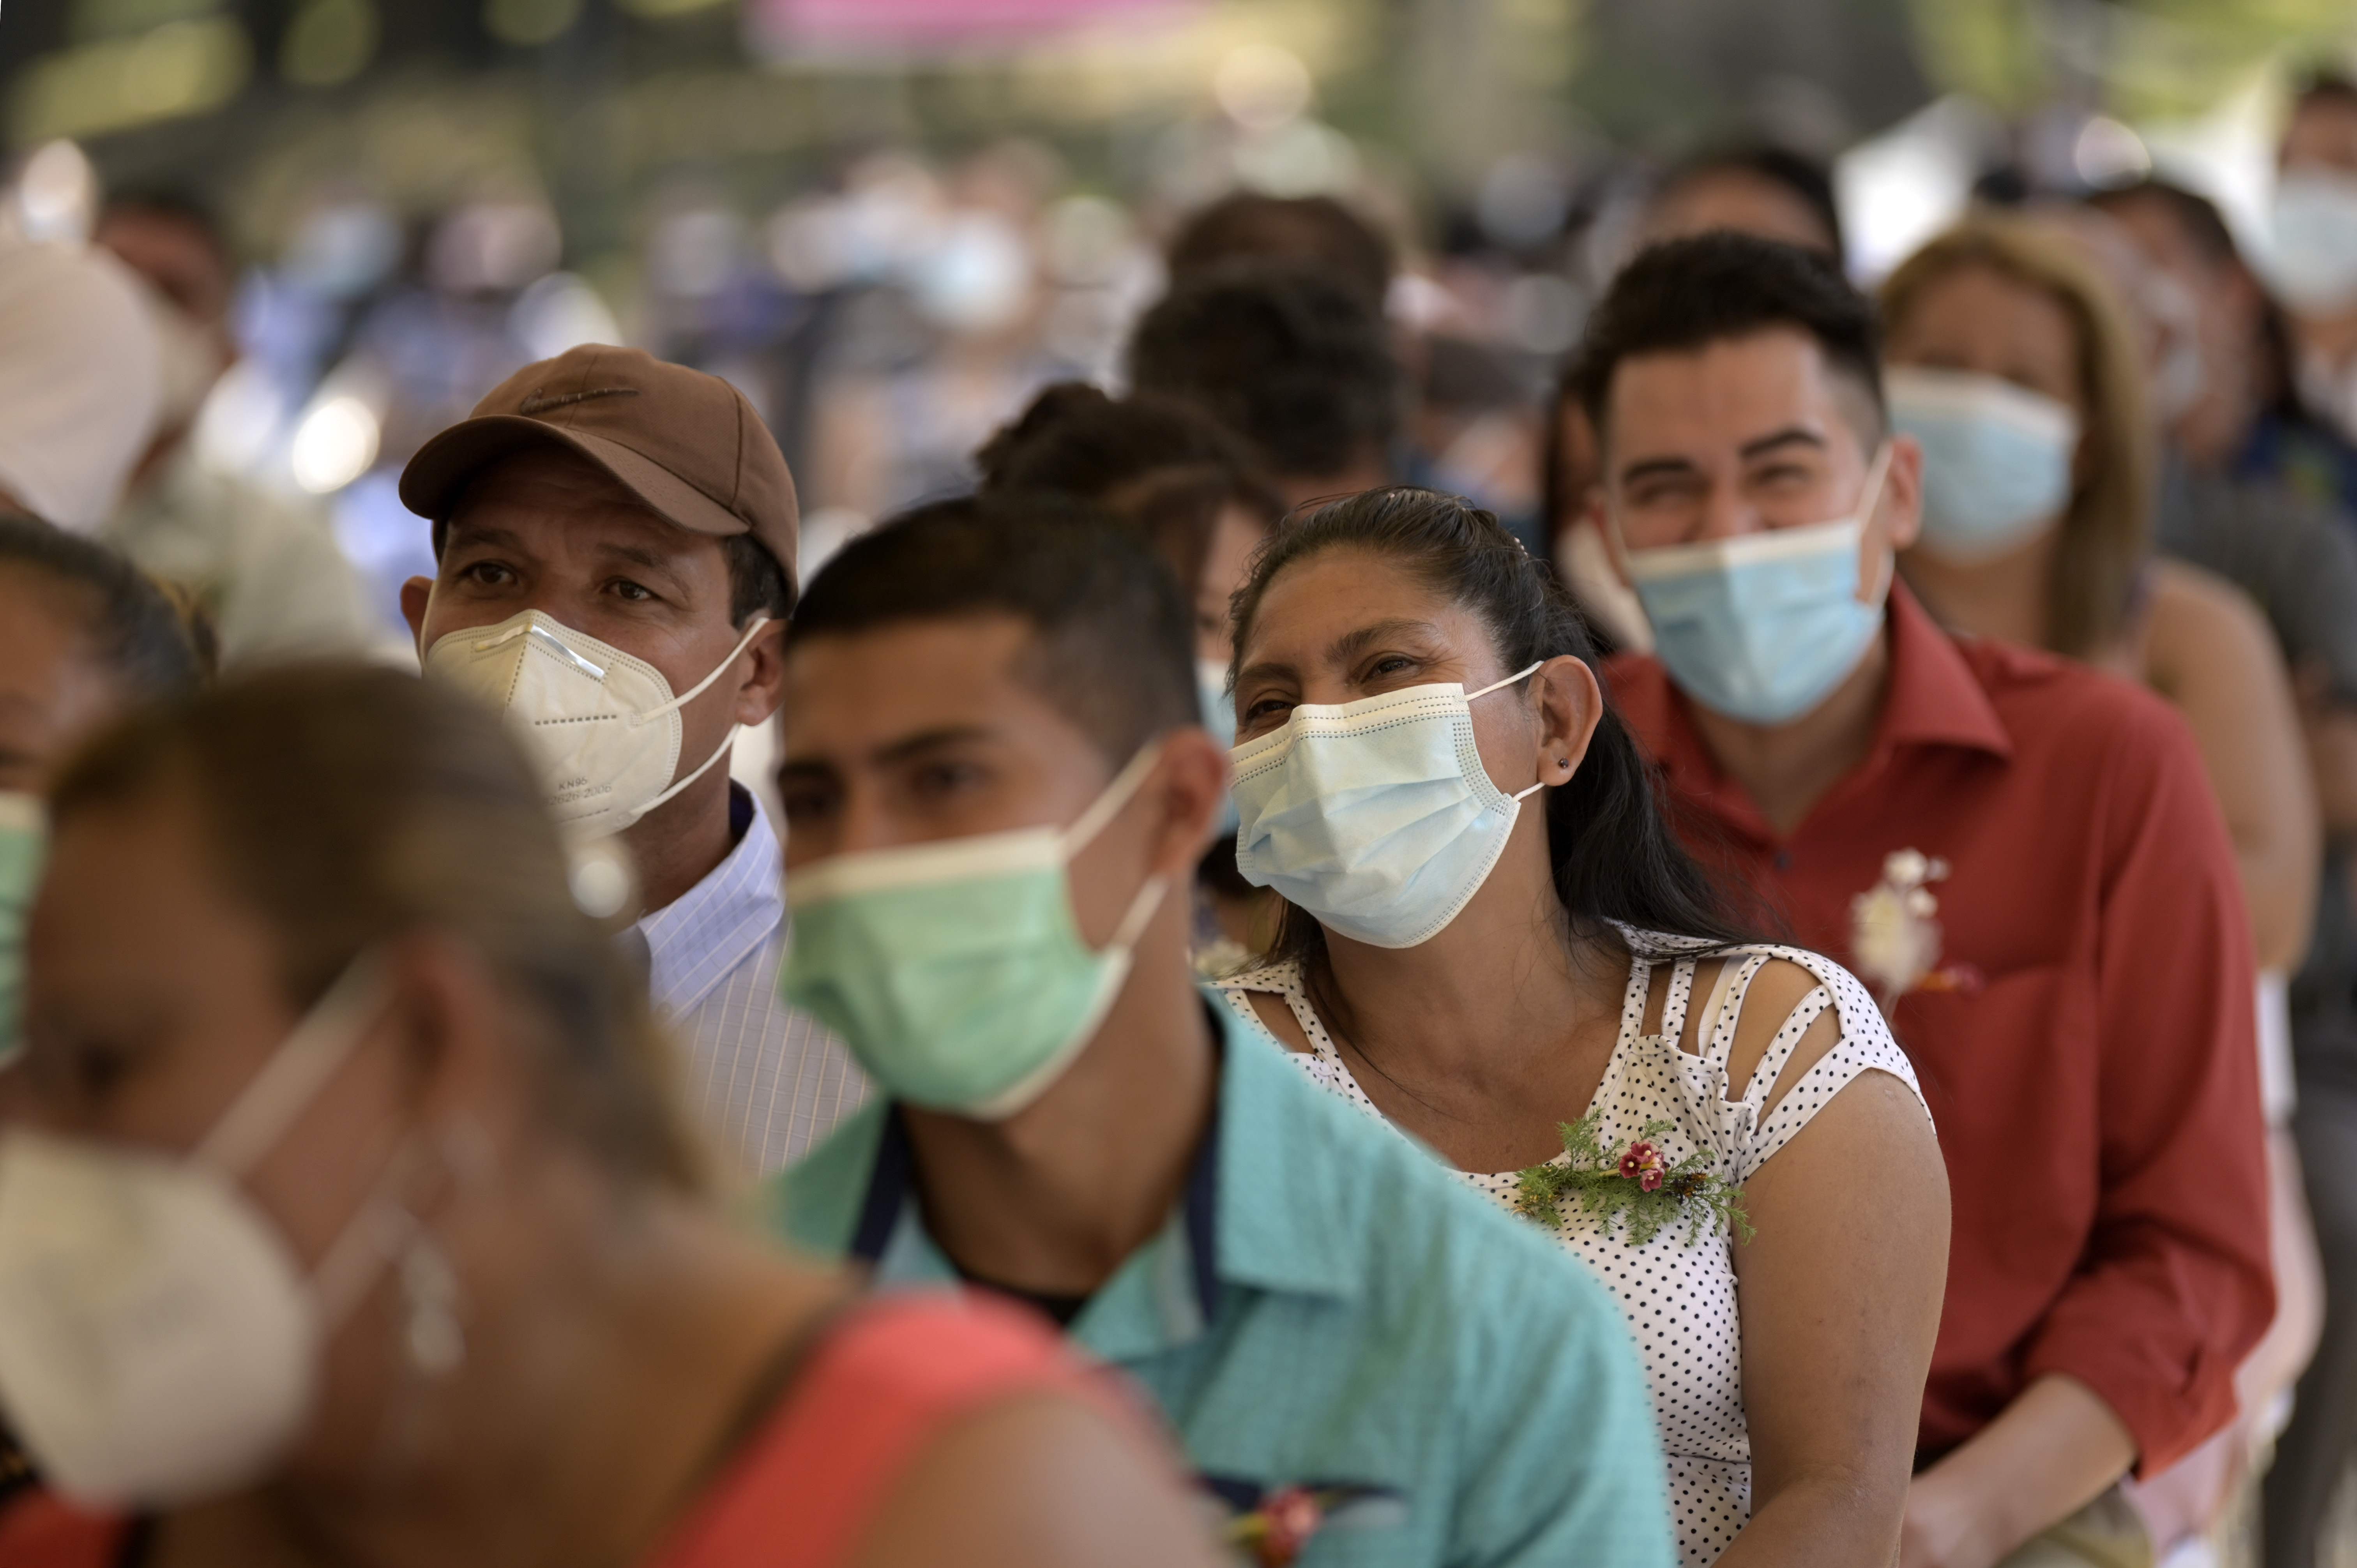 Las actividades sociales han estado restringidas en El Salvador a causa de la pandemia de coronavirus. (Foto Prensa Libre: AFP)